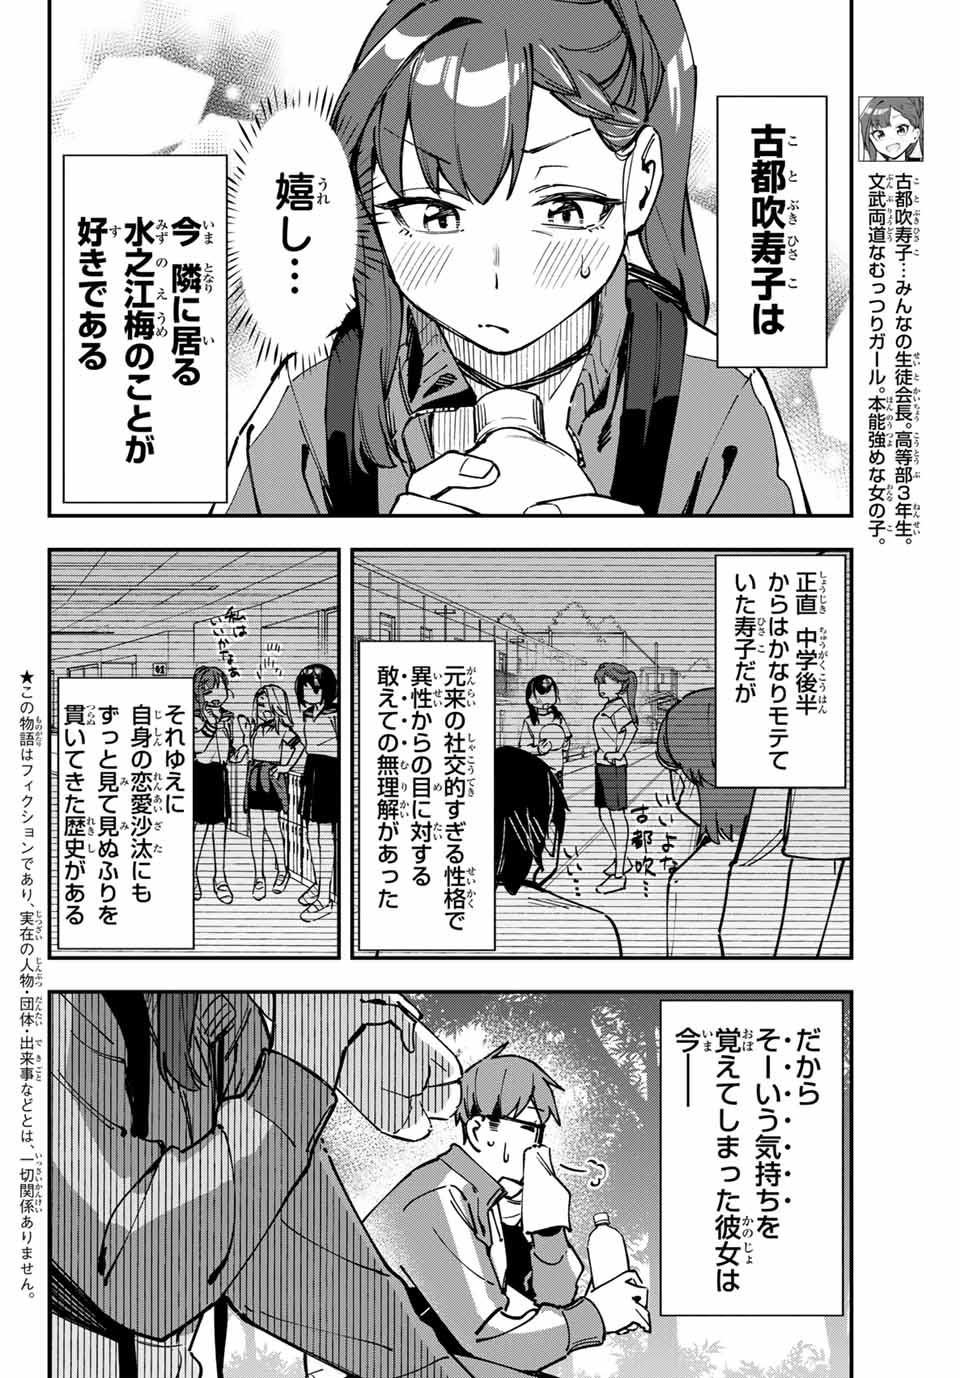 Seitokai mi mo Ana wa Aru! - Chapter 97 - Page 2